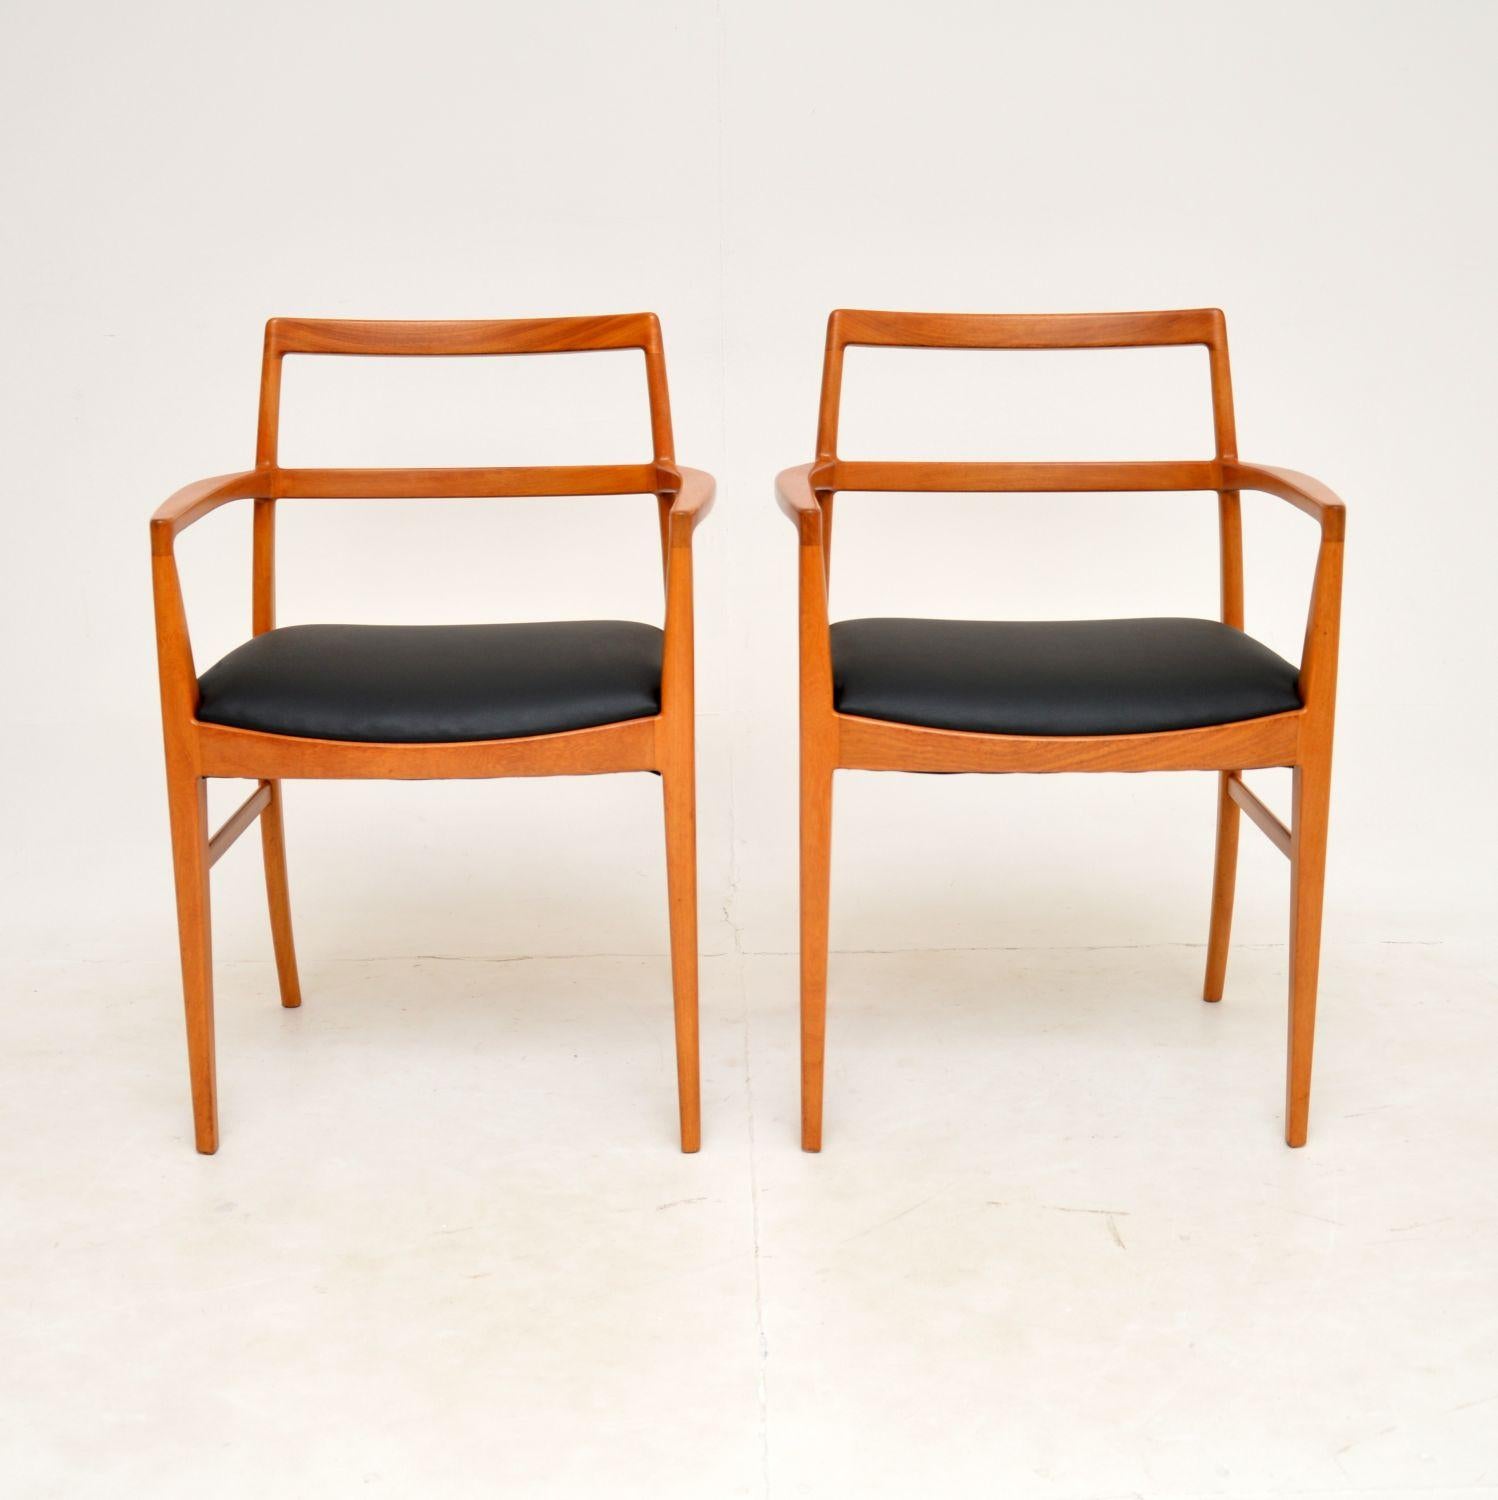 Une belle paire de fauteuils vintage danois de type carver, extrêmement bien réalisés. Ils ont été conçus par Arne Vodder pour Sibast et datent des années 1960.

Ce modèle est très rare, surtout dans ce bois. Il est difficile d'en être sûr, mais